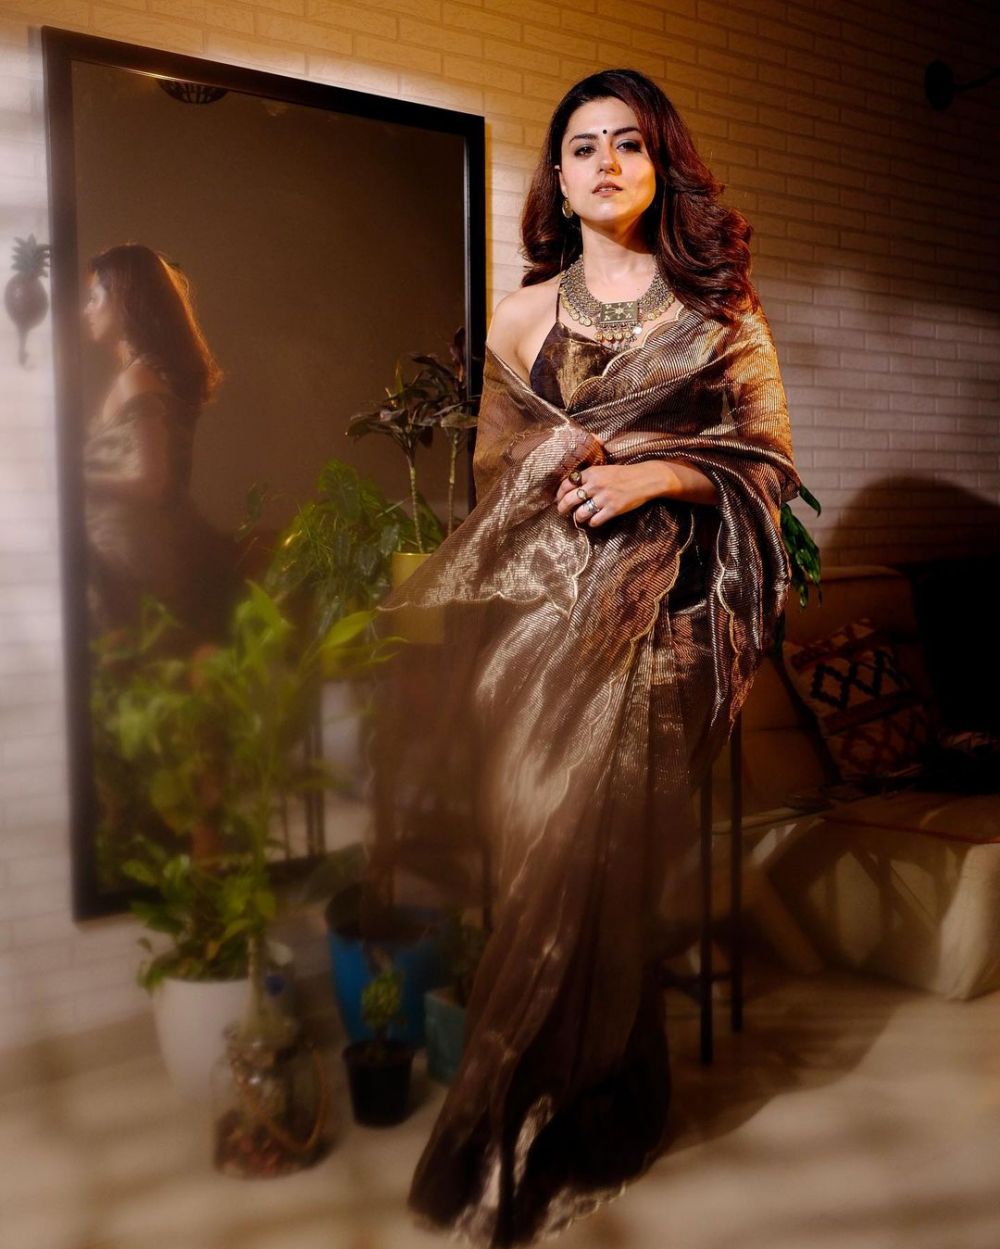 Selalu tampil pakai Sari sederhana, intip potret 9 aktris Nakusha yang bergaya glamor di keseharian